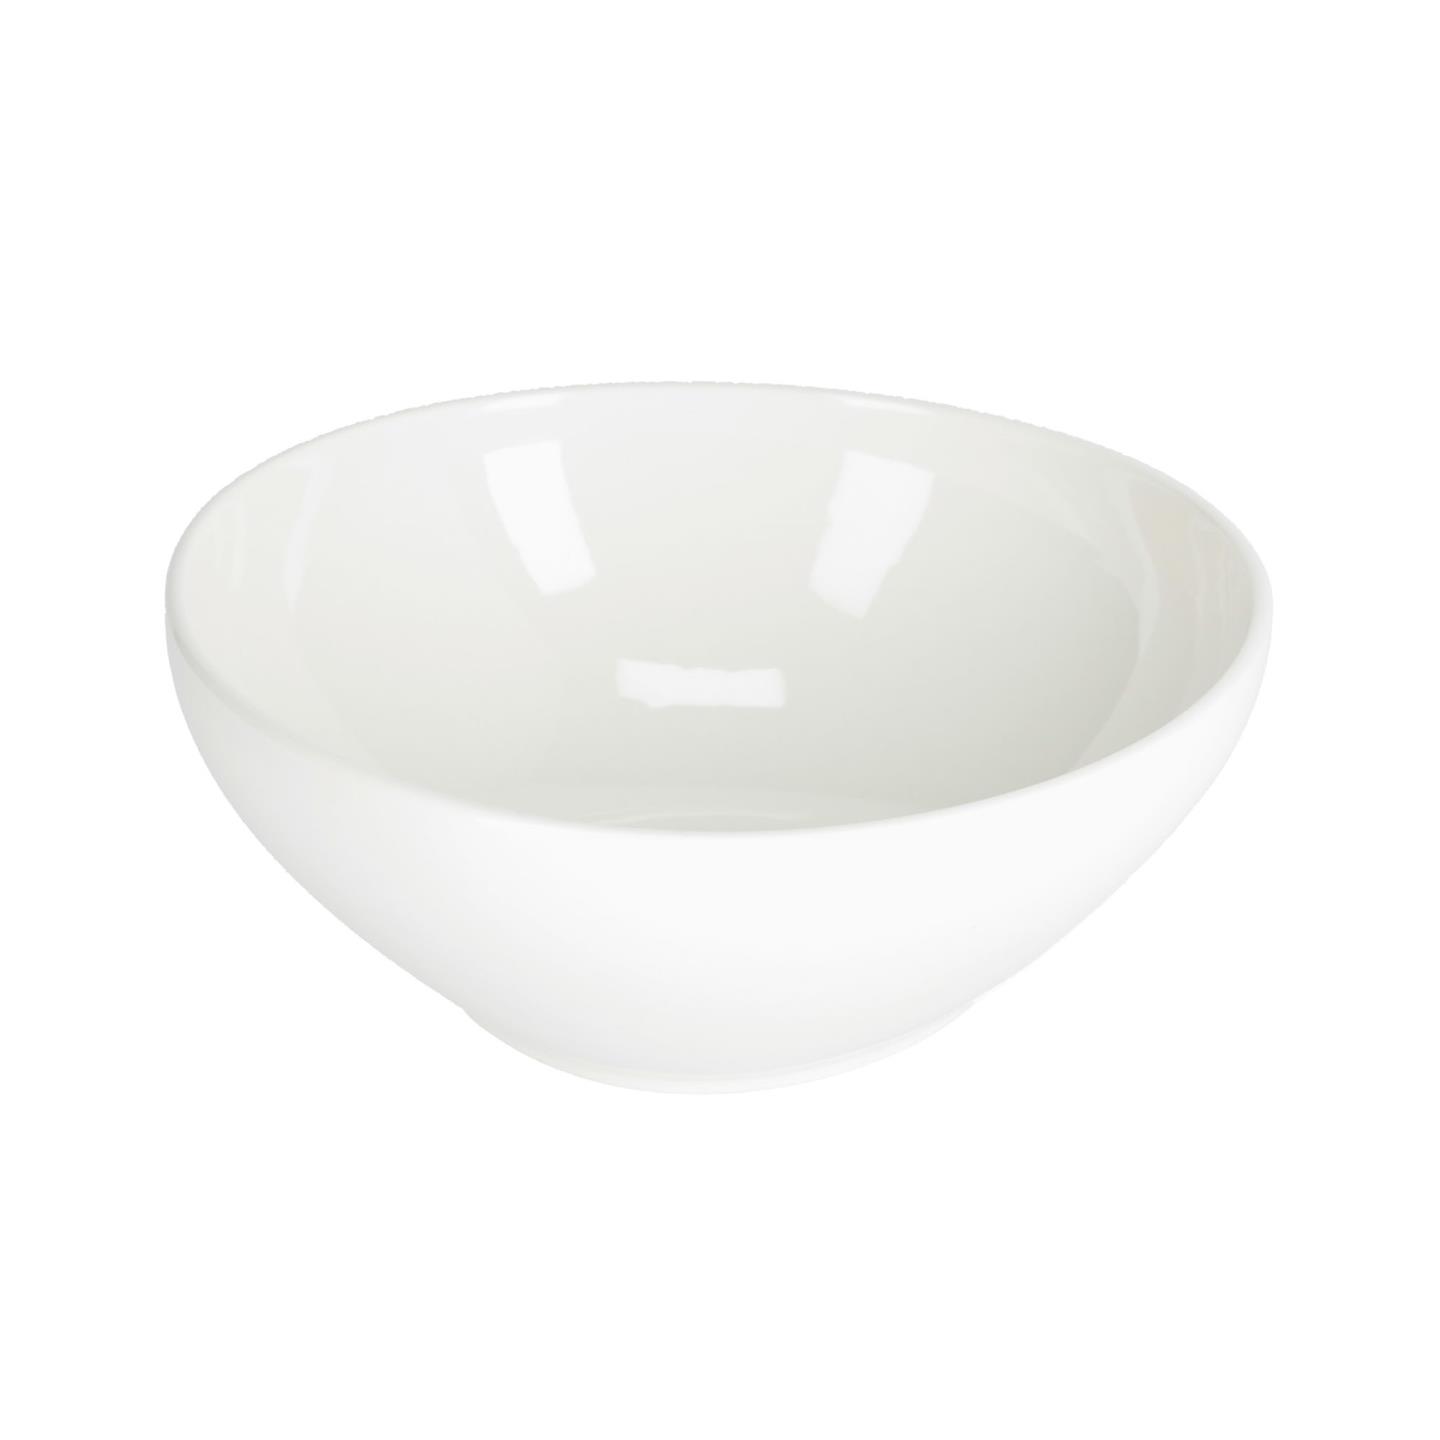 LAFORMA Pahi stor skål, rund - hvid porcelæn (Ø24)